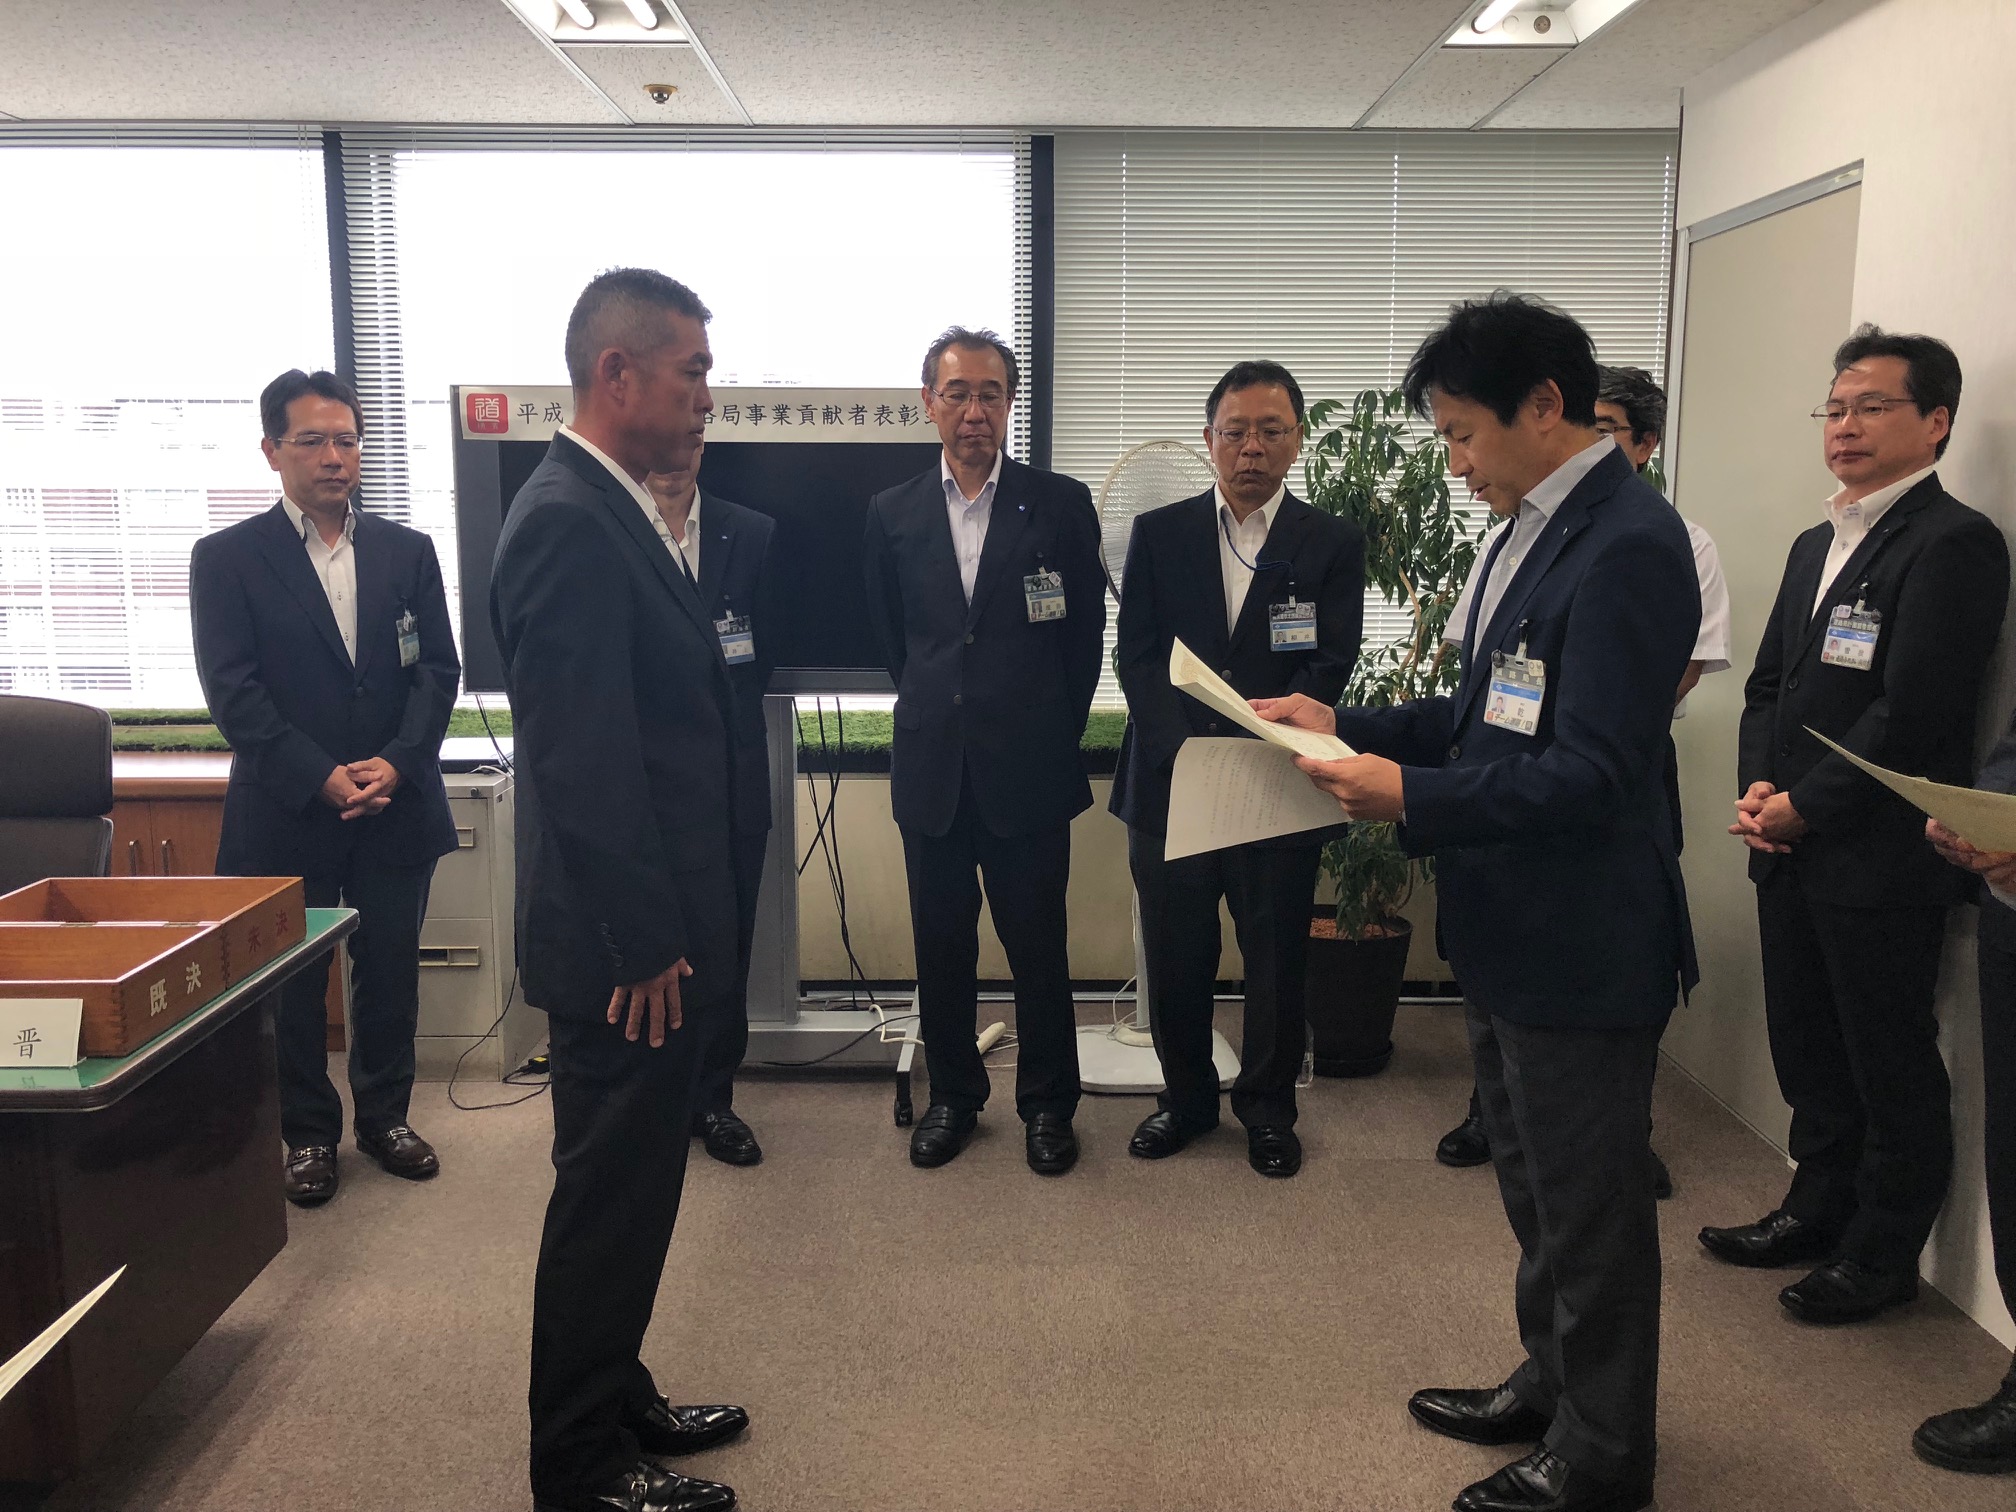 弊社の吉江誠が横浜市の「平成30年度 道路事業貢献者」として表彰されました